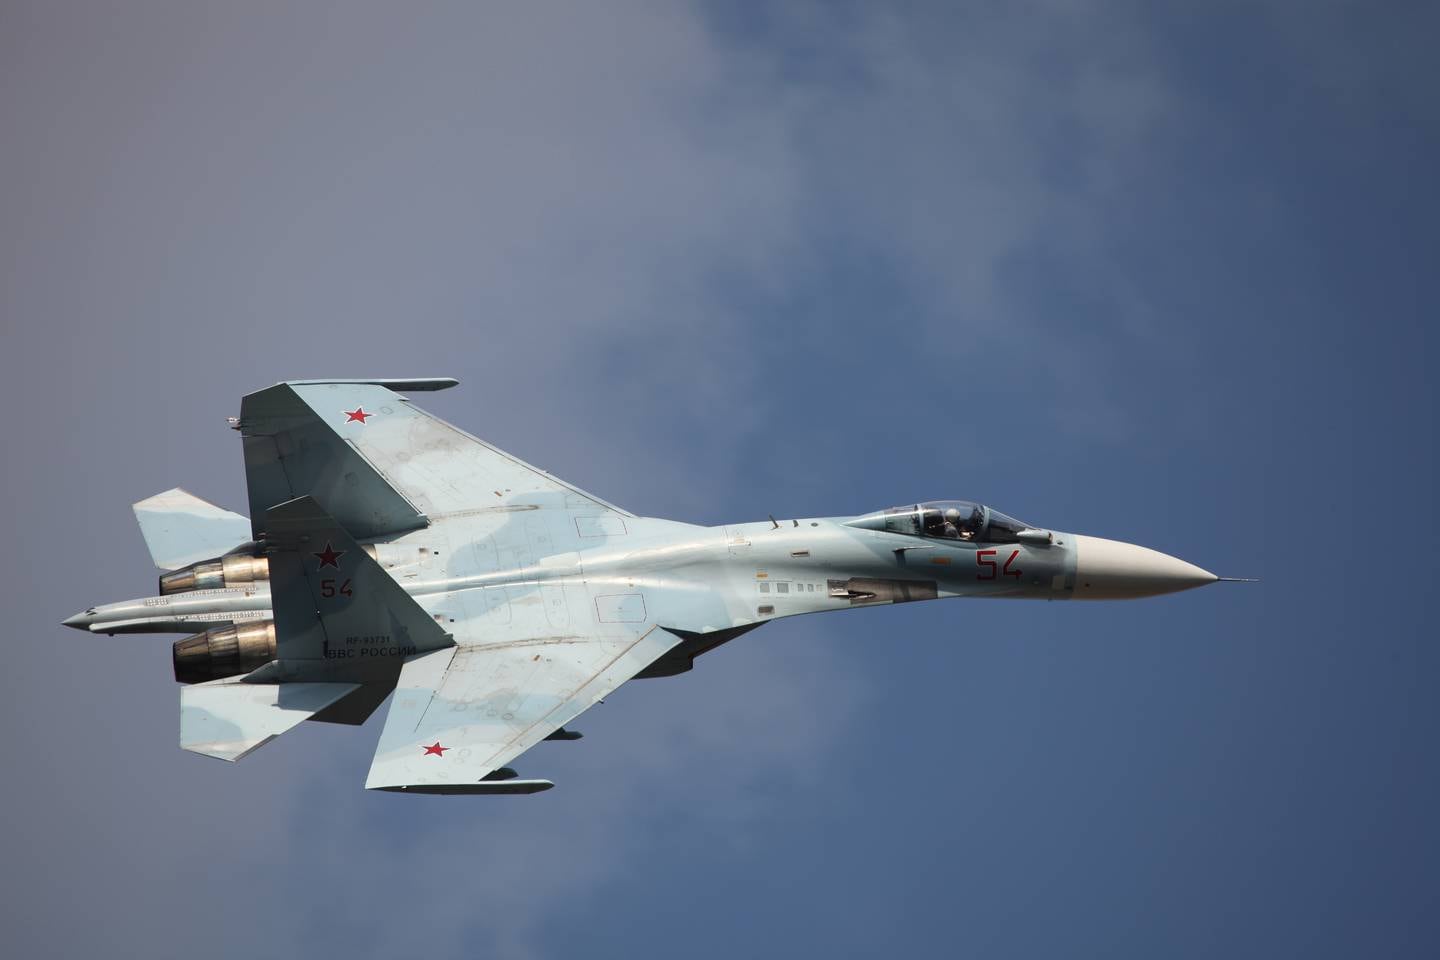 Sukhoi Su-27, med Nato-kallenavnet Flanker, er et russisk jagerfly som først ble tatt i bruk i midten av 1980-tallet.